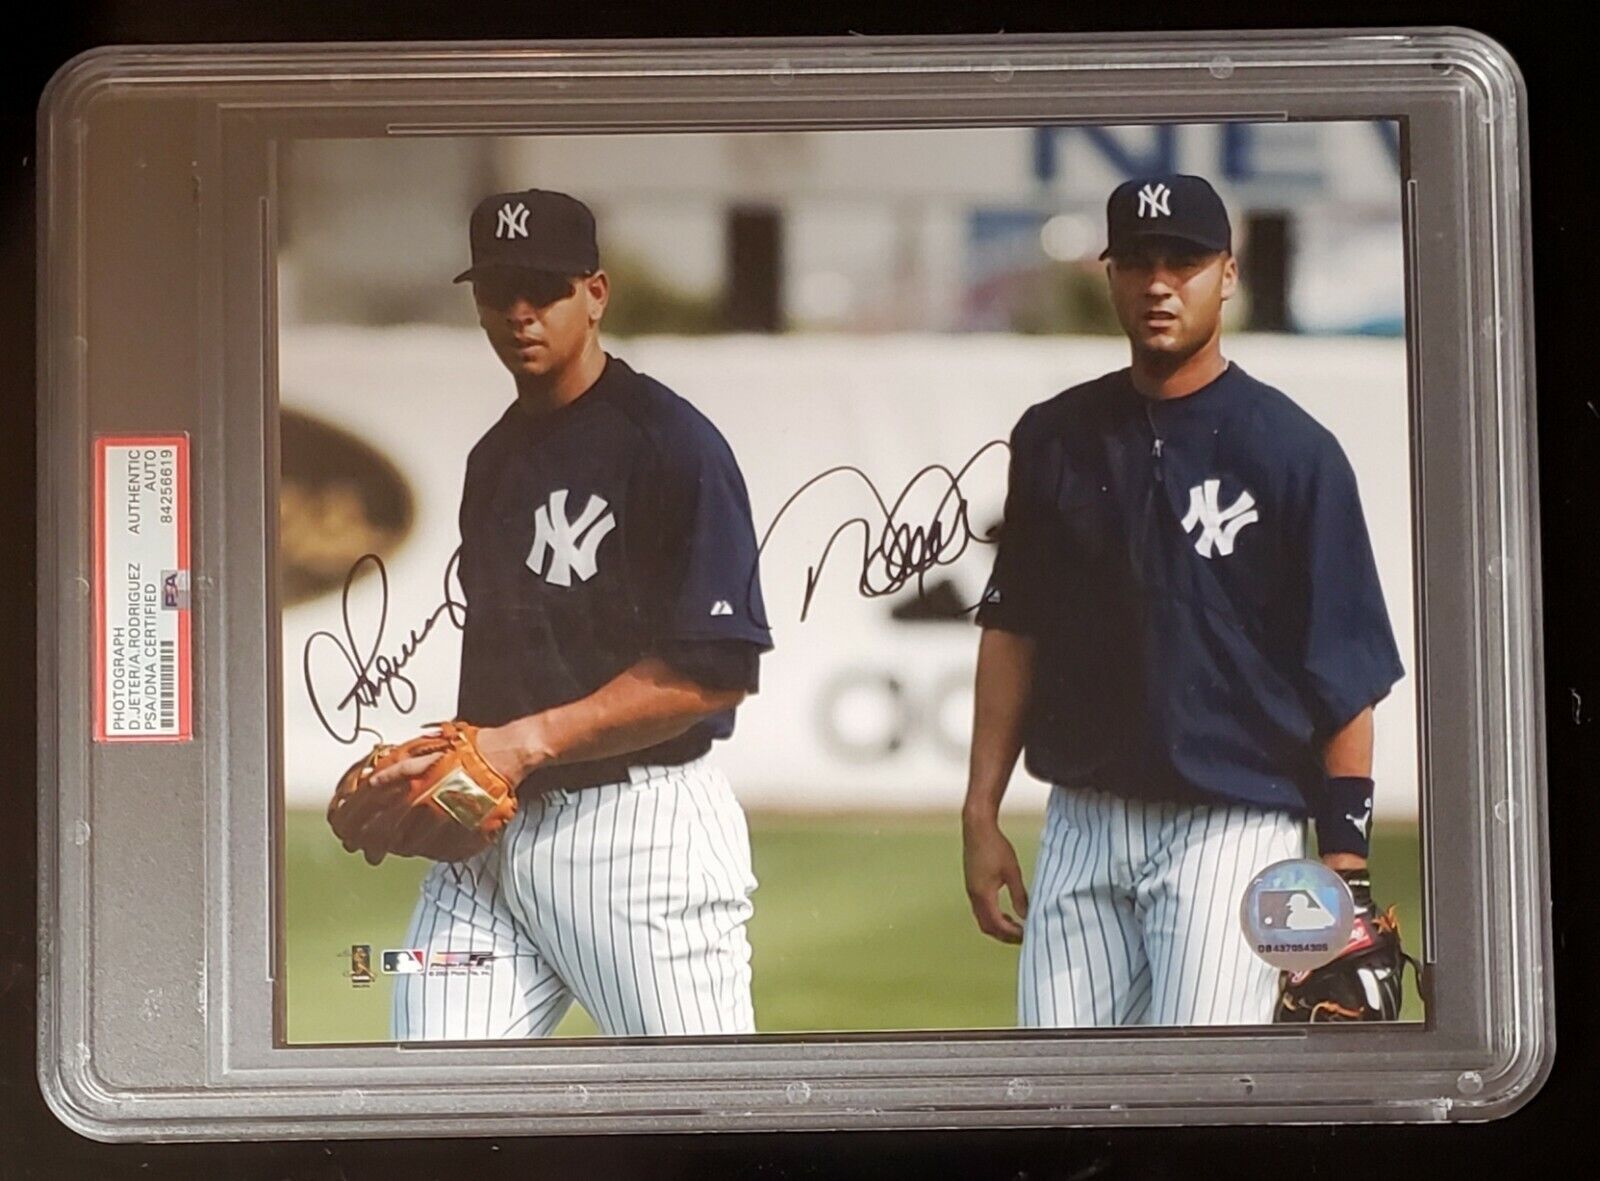 DEREK JETER Alex RODRIGUEZ Signed 8x10 Photo PSA/DNA Dual Auto Autograph  Yankees